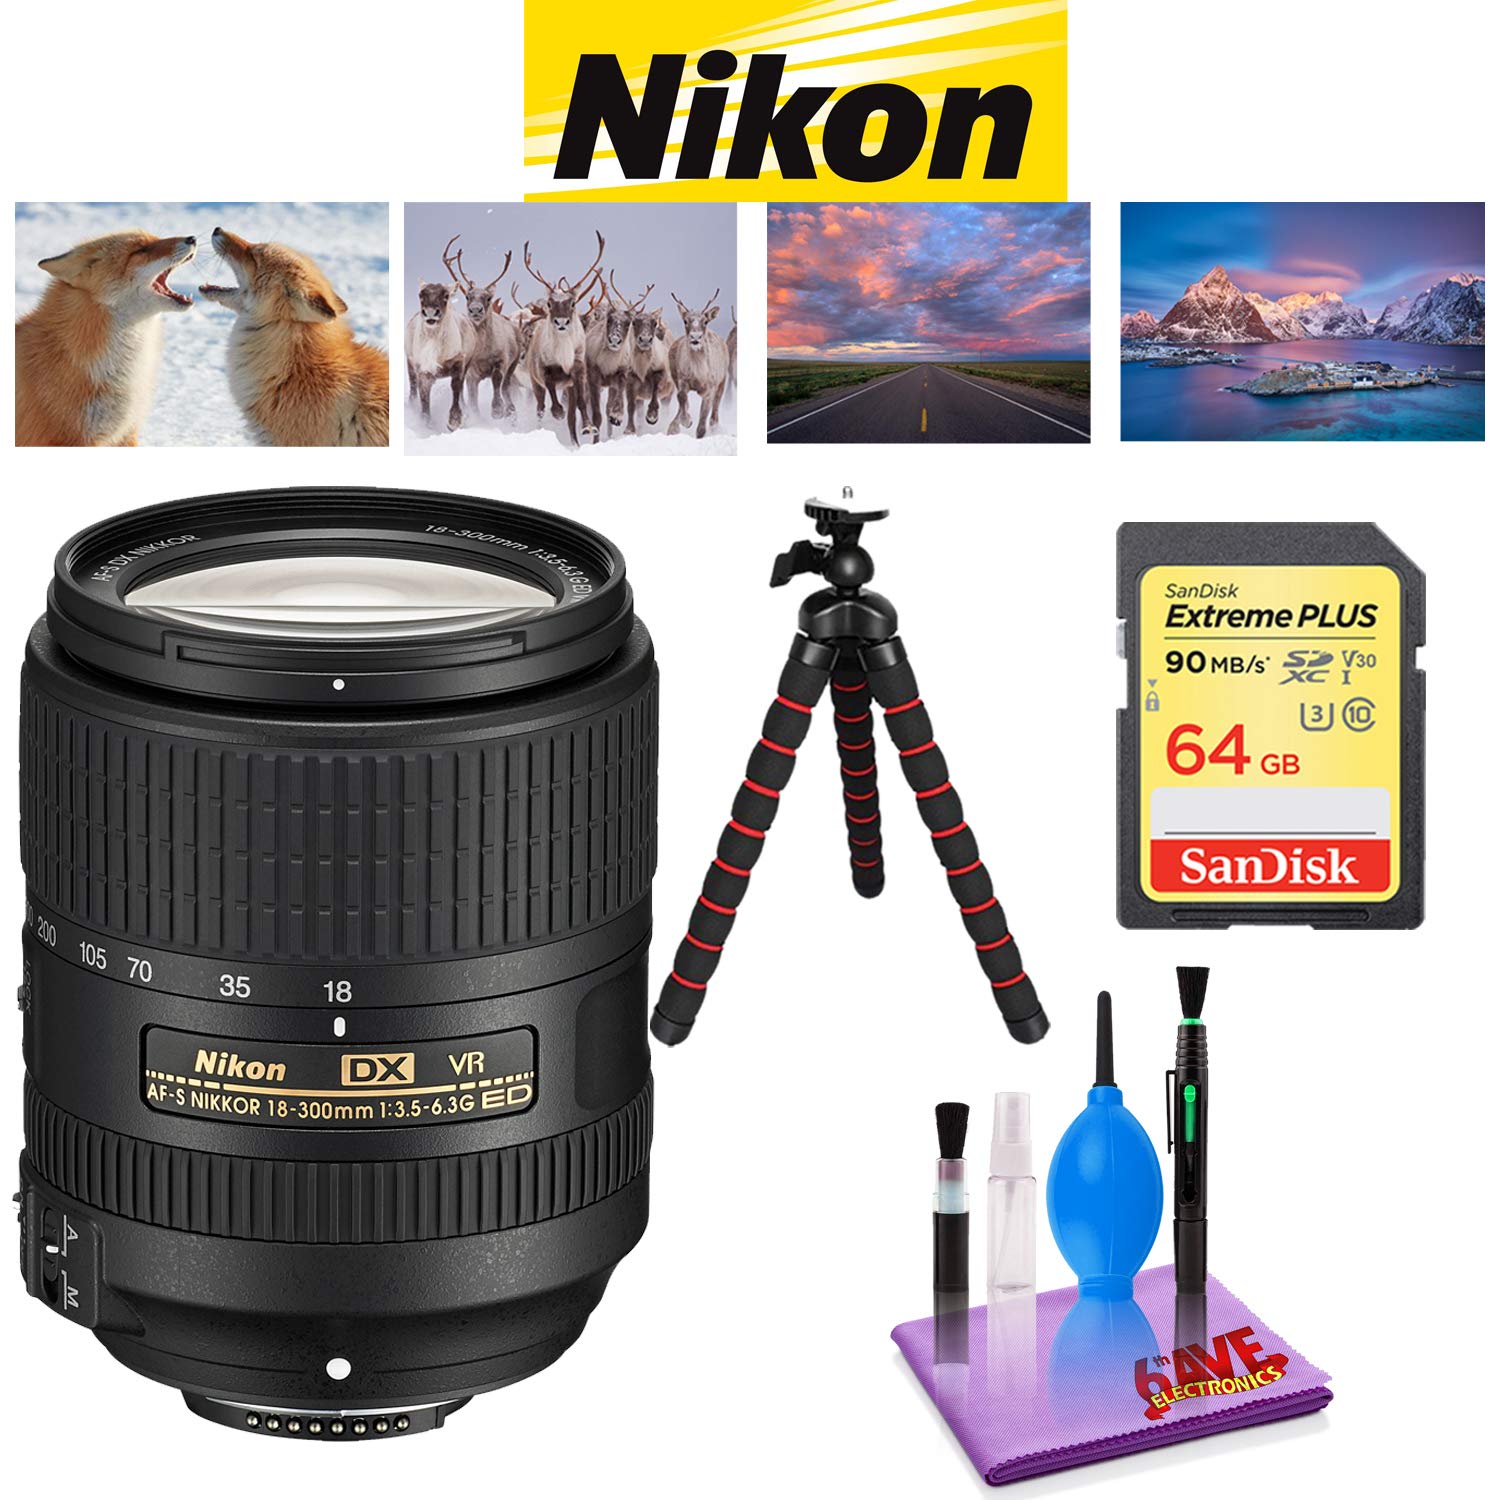 NIKON 18-300MM F/3.5-6.3G ED AF-S DX VR Lens with Sandisk 64 GB Memory Card, Deluxe Backpack for Camera + Video Bundle